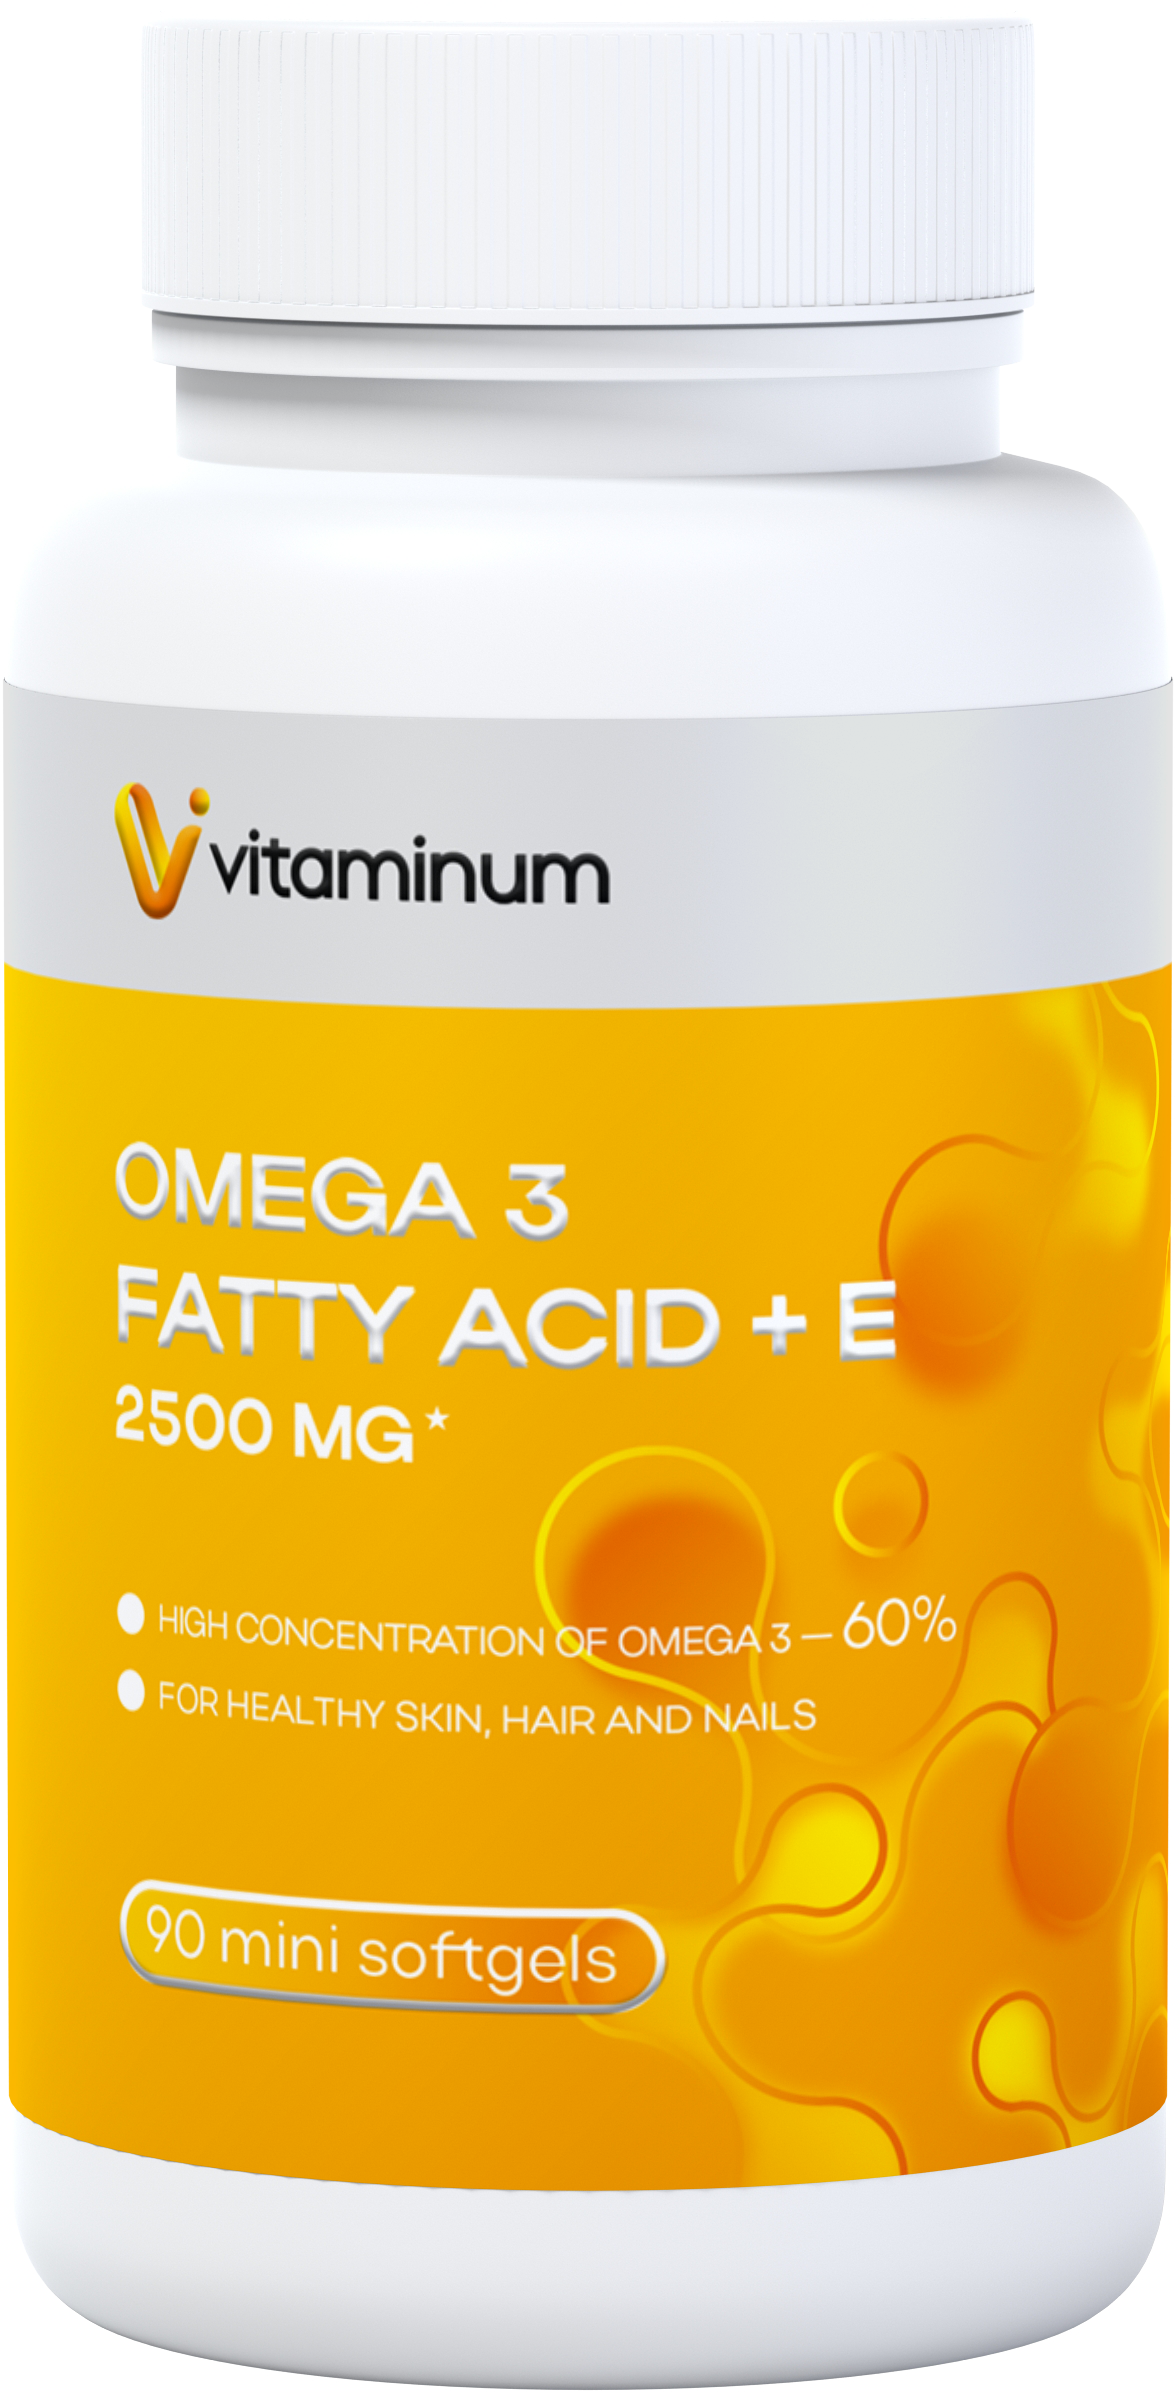  Vitaminum ОМЕГА 3 60% + витамин Е (2500 MG*) 90 капсул 700 мг   в Симферополе